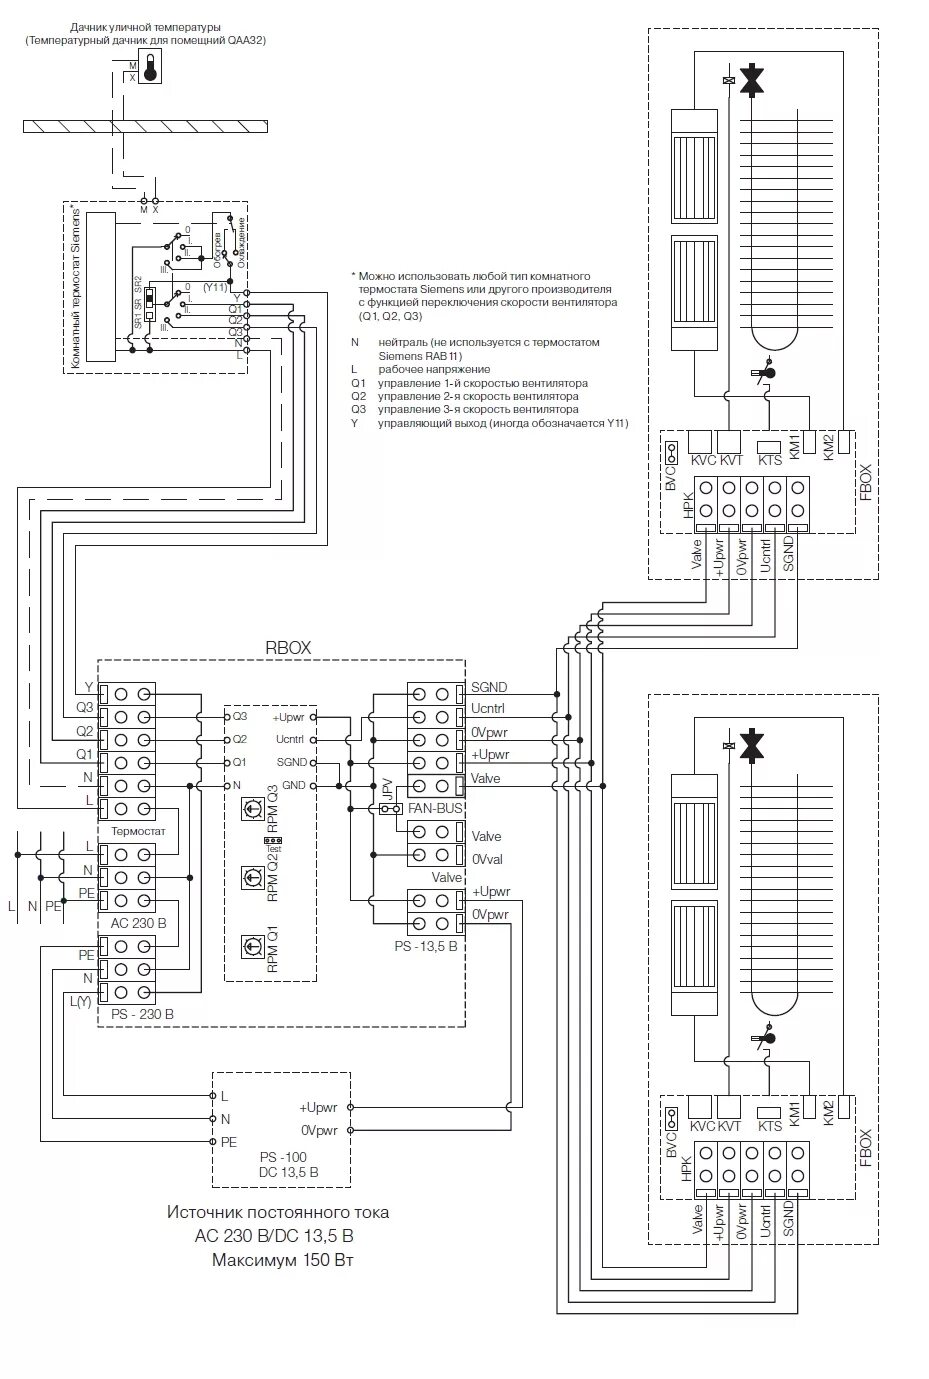 Электрические схемы конвекторов. Hbs57h схема подключения. Hbs860h схема подключения. Схема подключения драйвераhbs860h. Схема подключения конвектора отопления с терморегулятором.